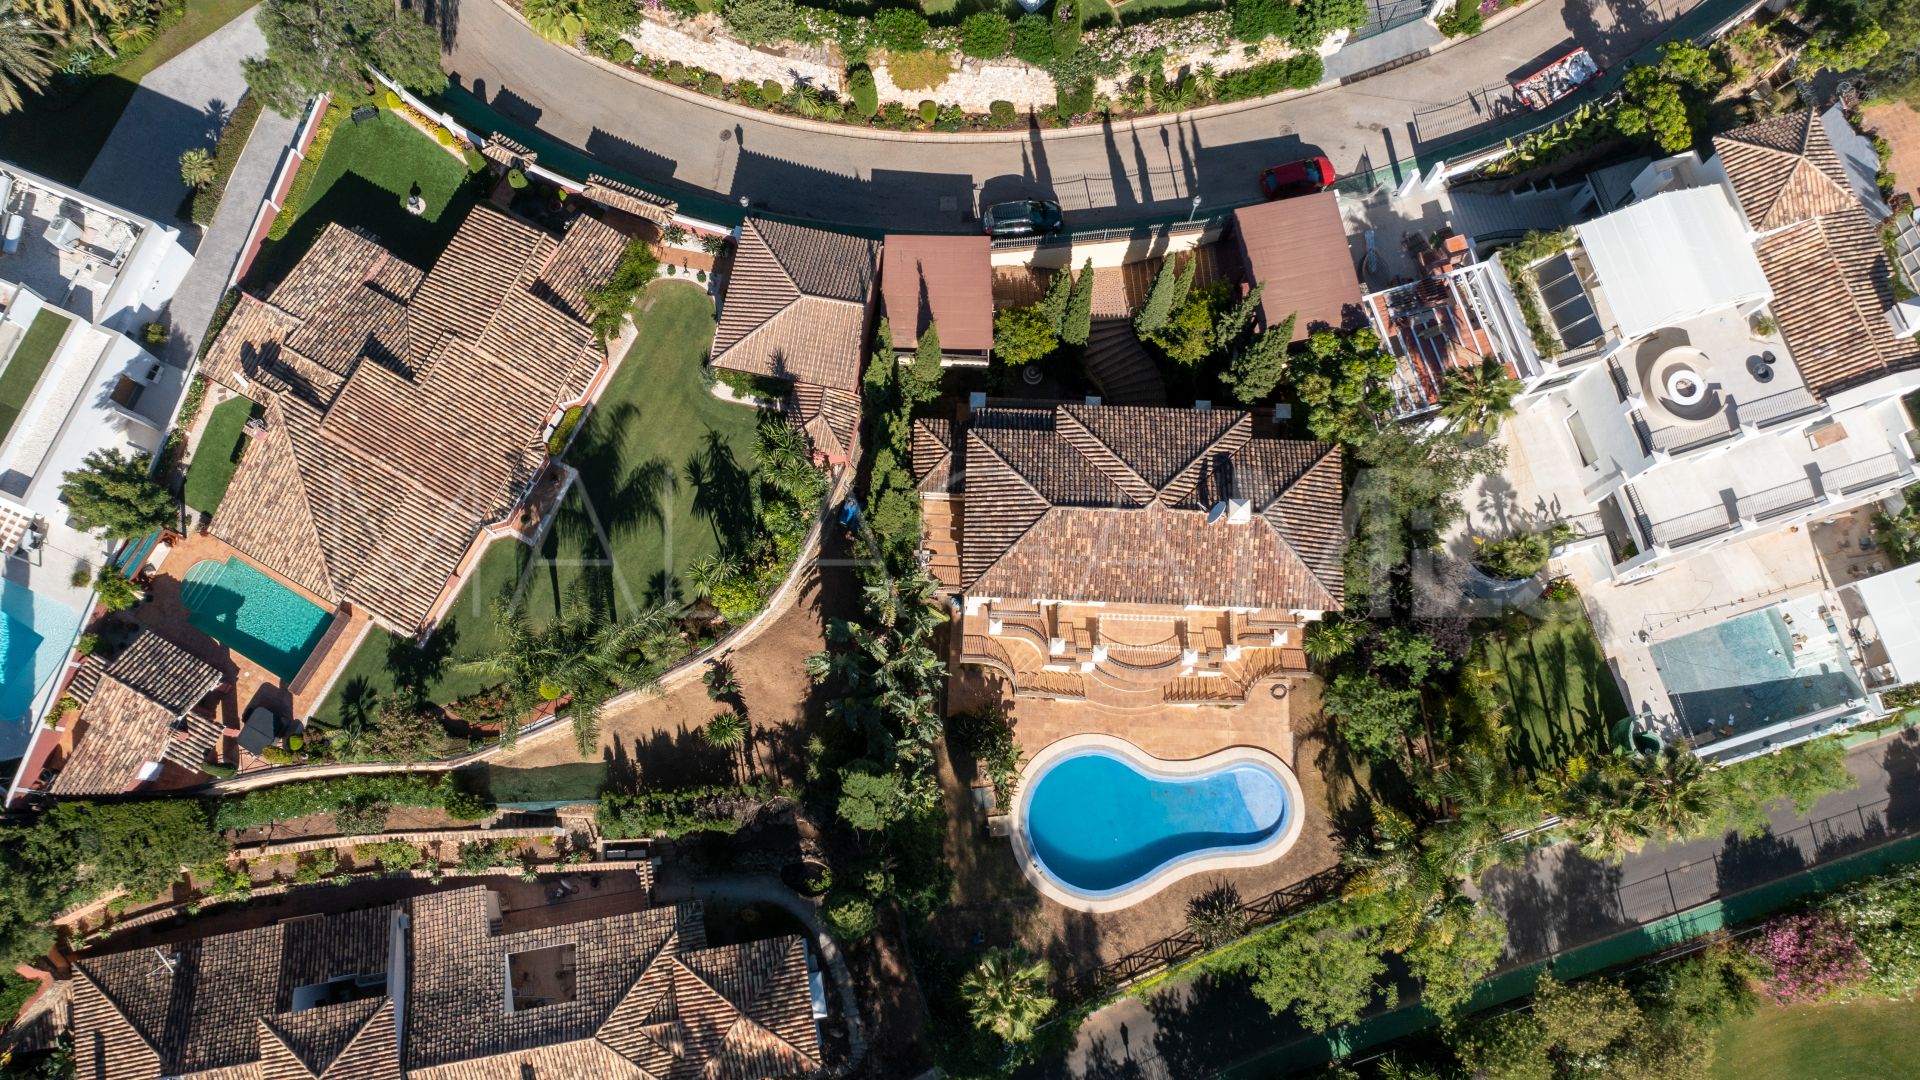 Villa for sale in El Herrojo with 6 bedrooms